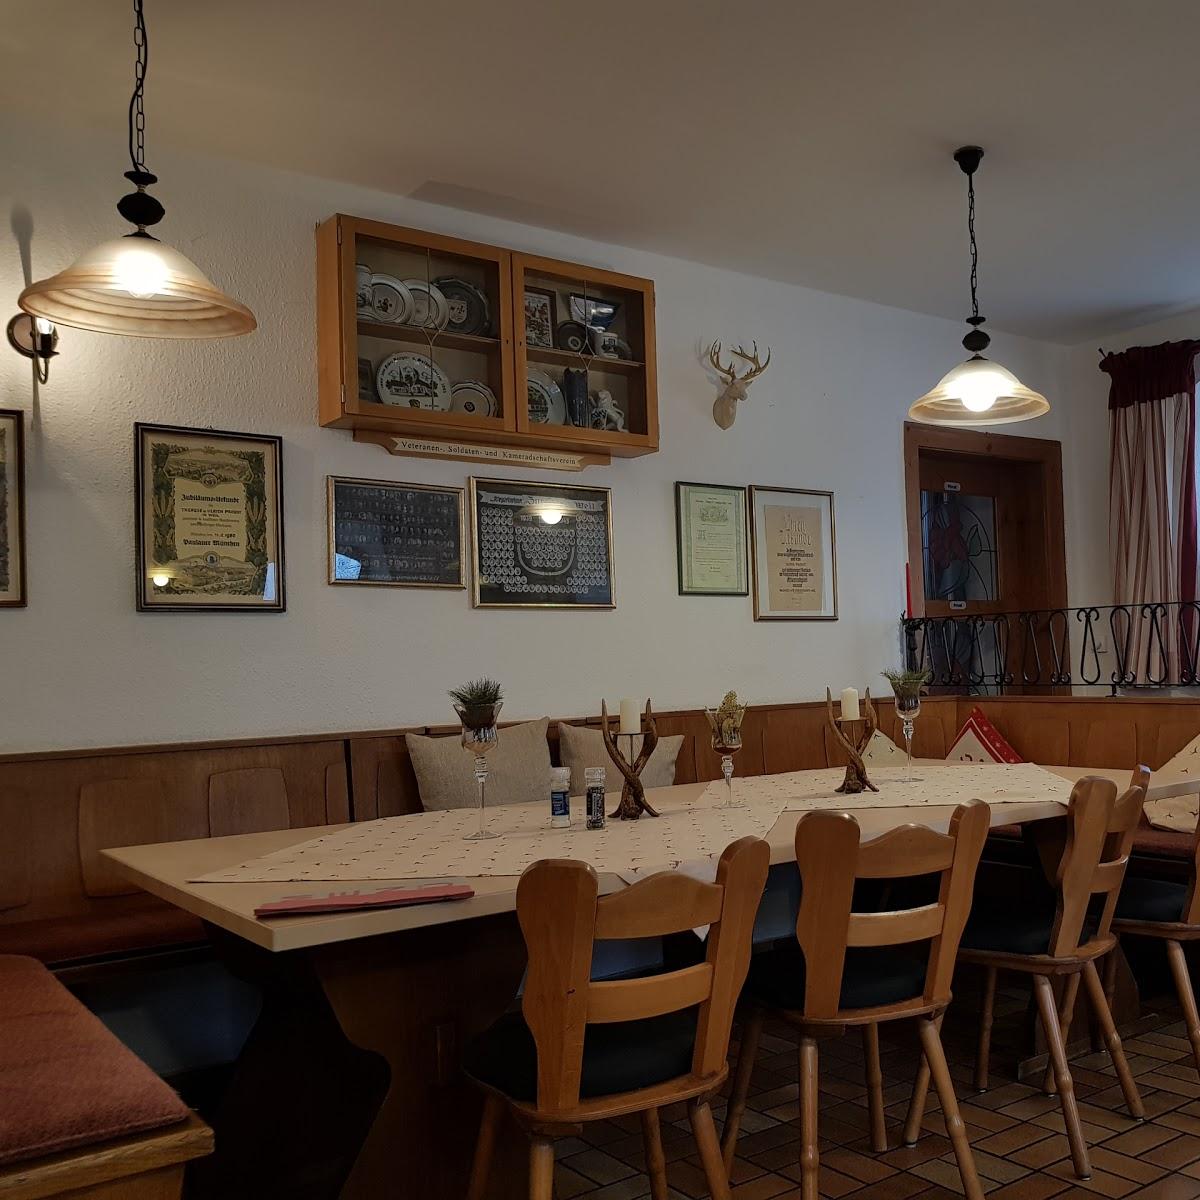 Restaurant "Landgasthof Probst" in  Weil